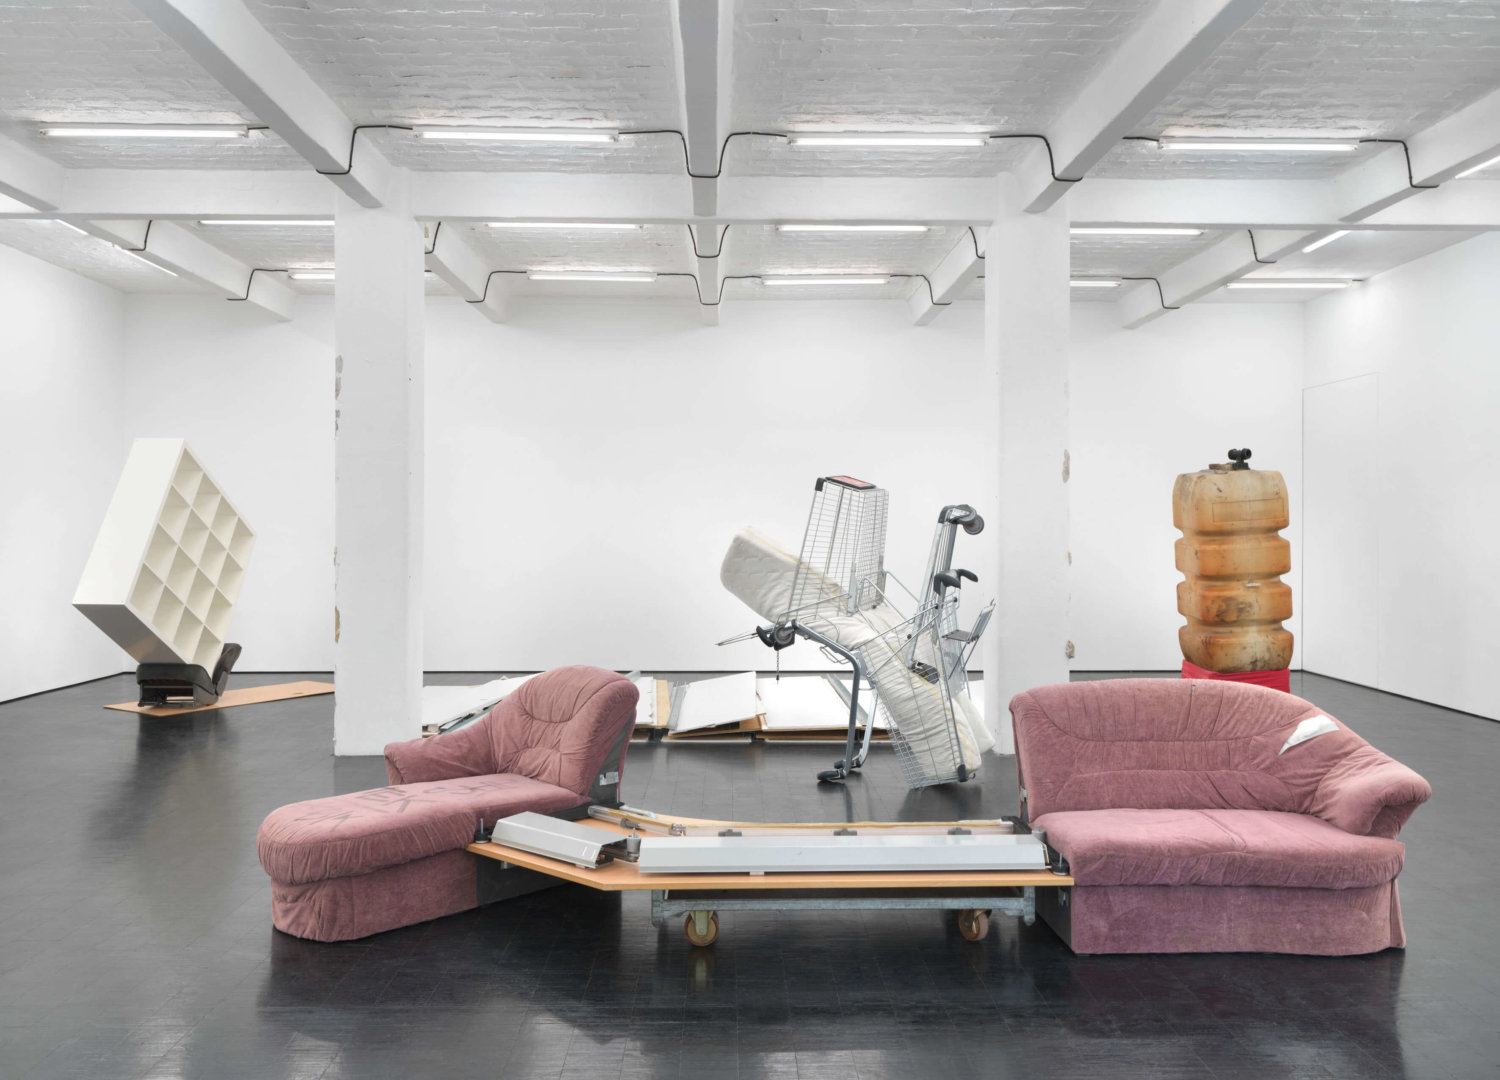 verschiedene Objekte im Ausstellungsraum: ein zweigeteiltes Sofa, Einkaufwägen, ein Regal, ein großer Kanister